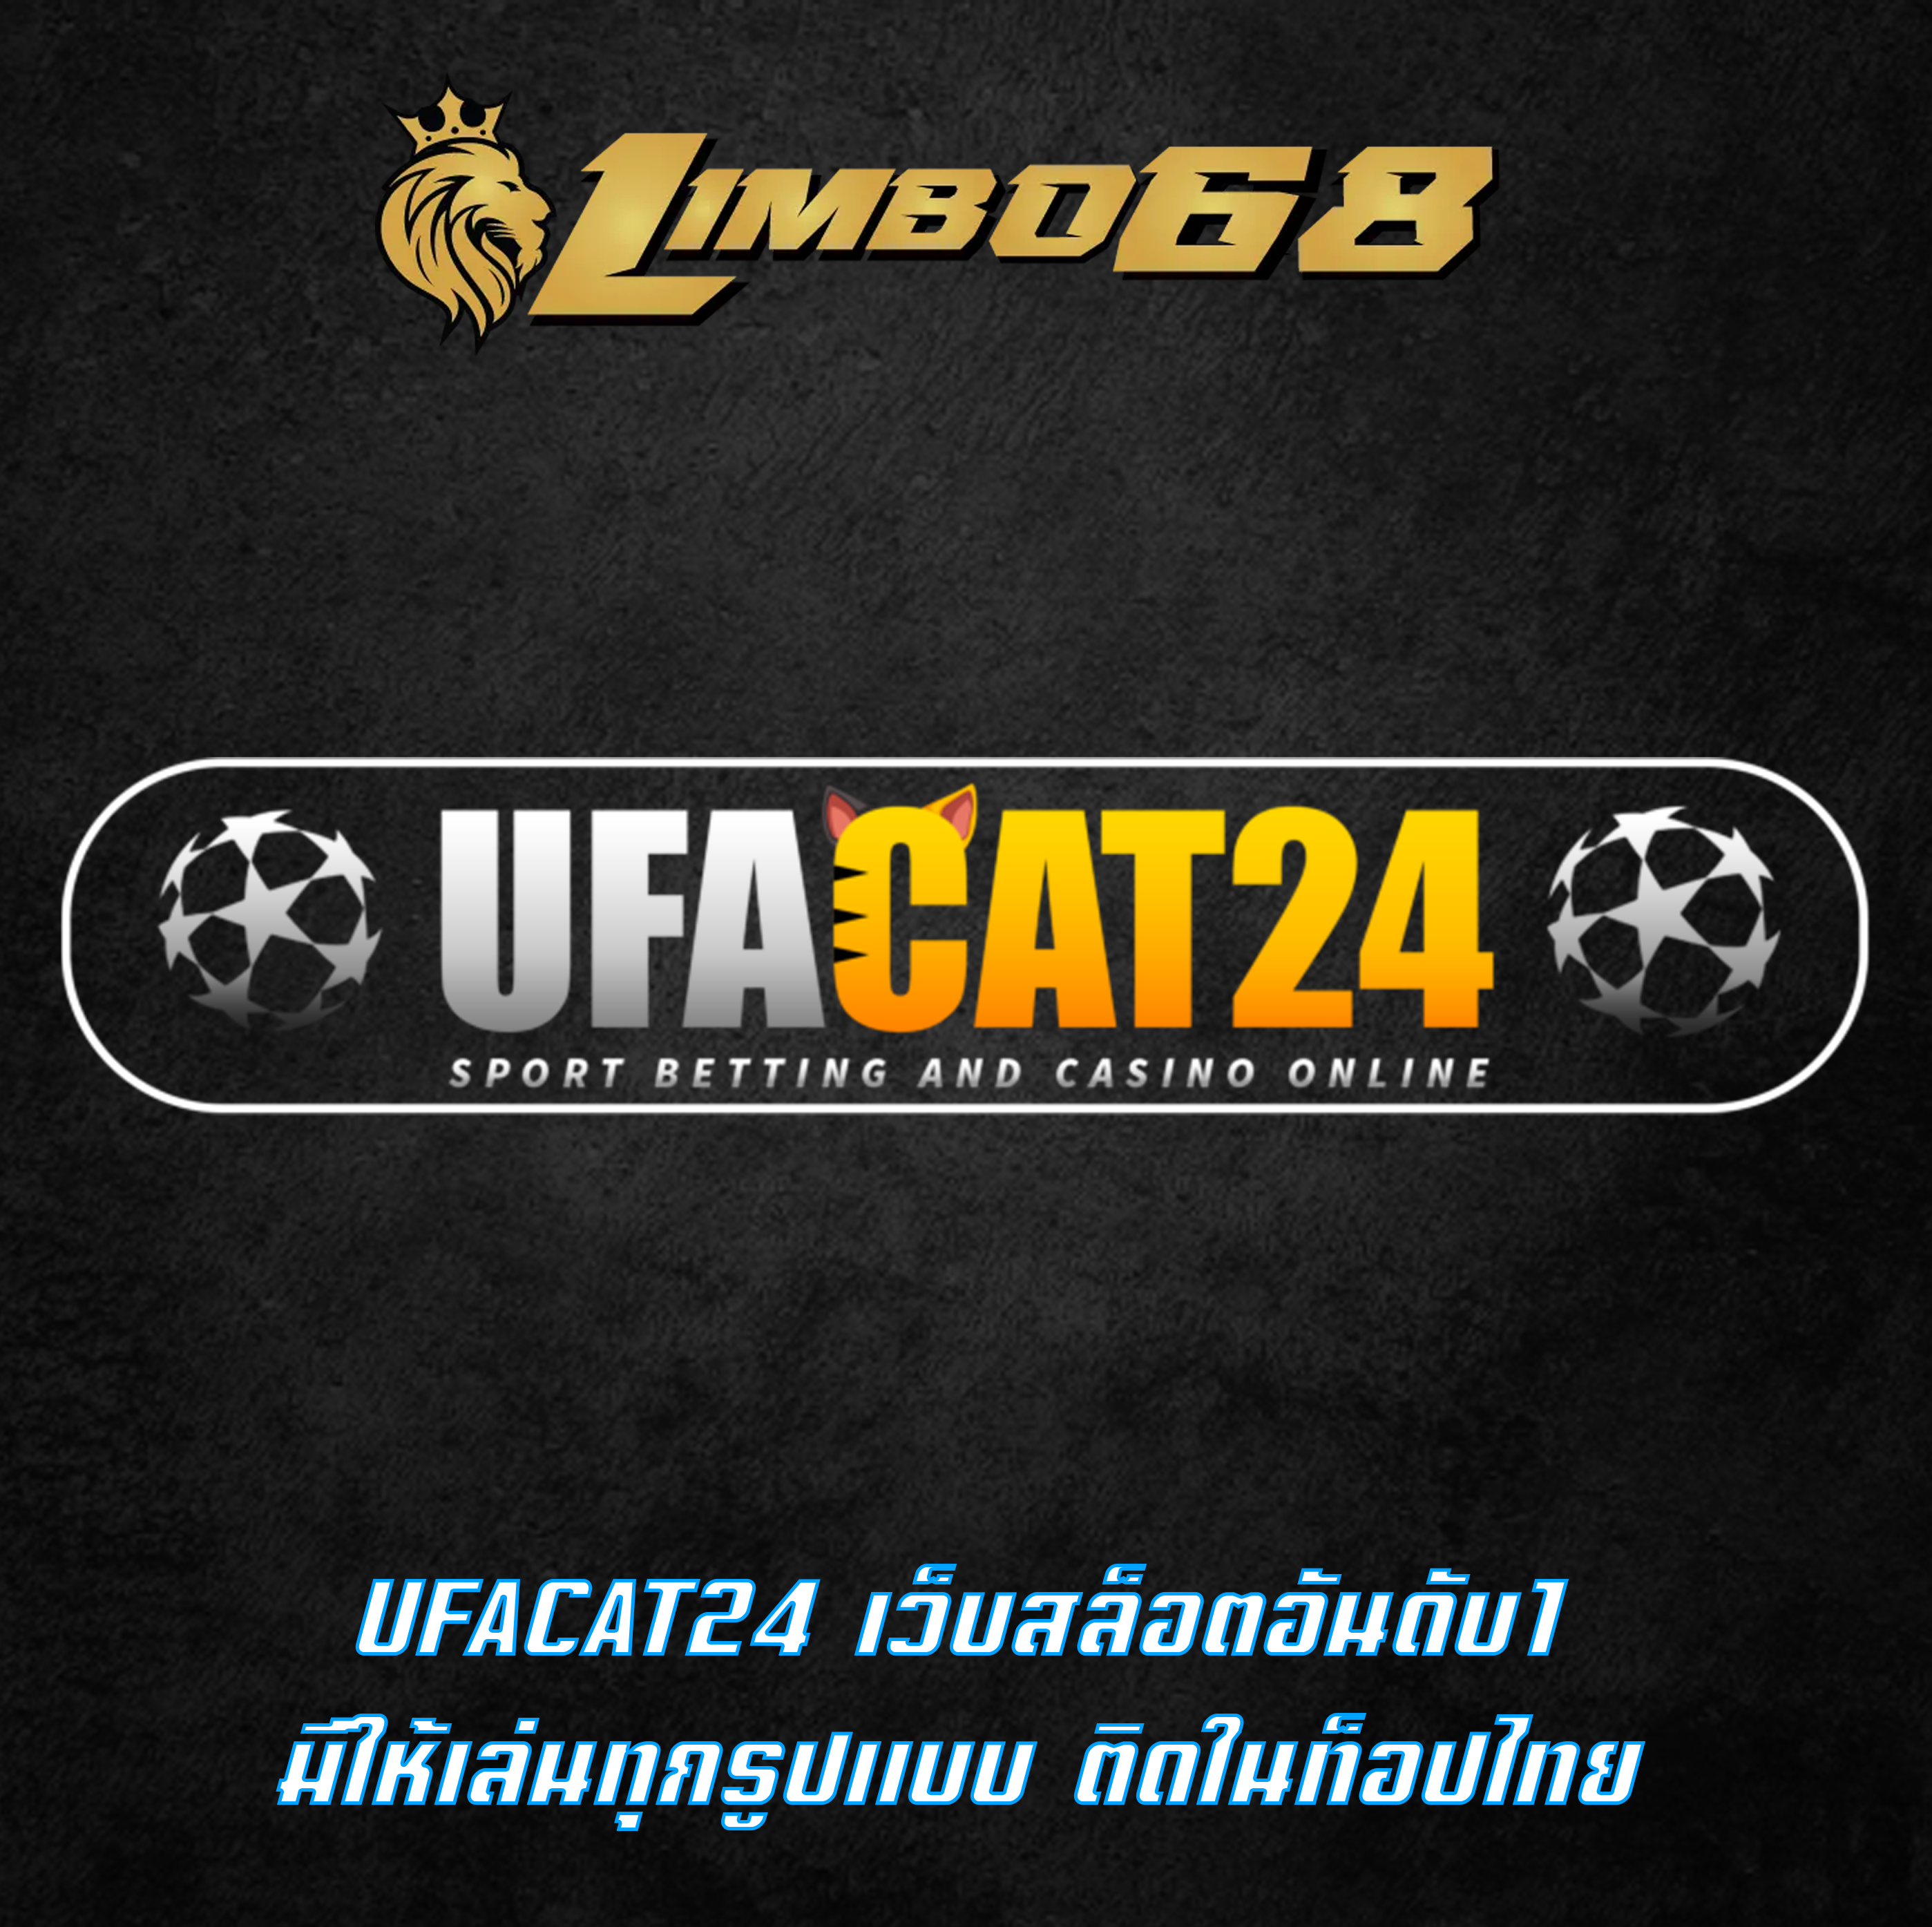 UFACAT24 เว็บสล็อตอันดับ1 มีให้เล่นทุกรูปแบบ ติดในท็อปไทย